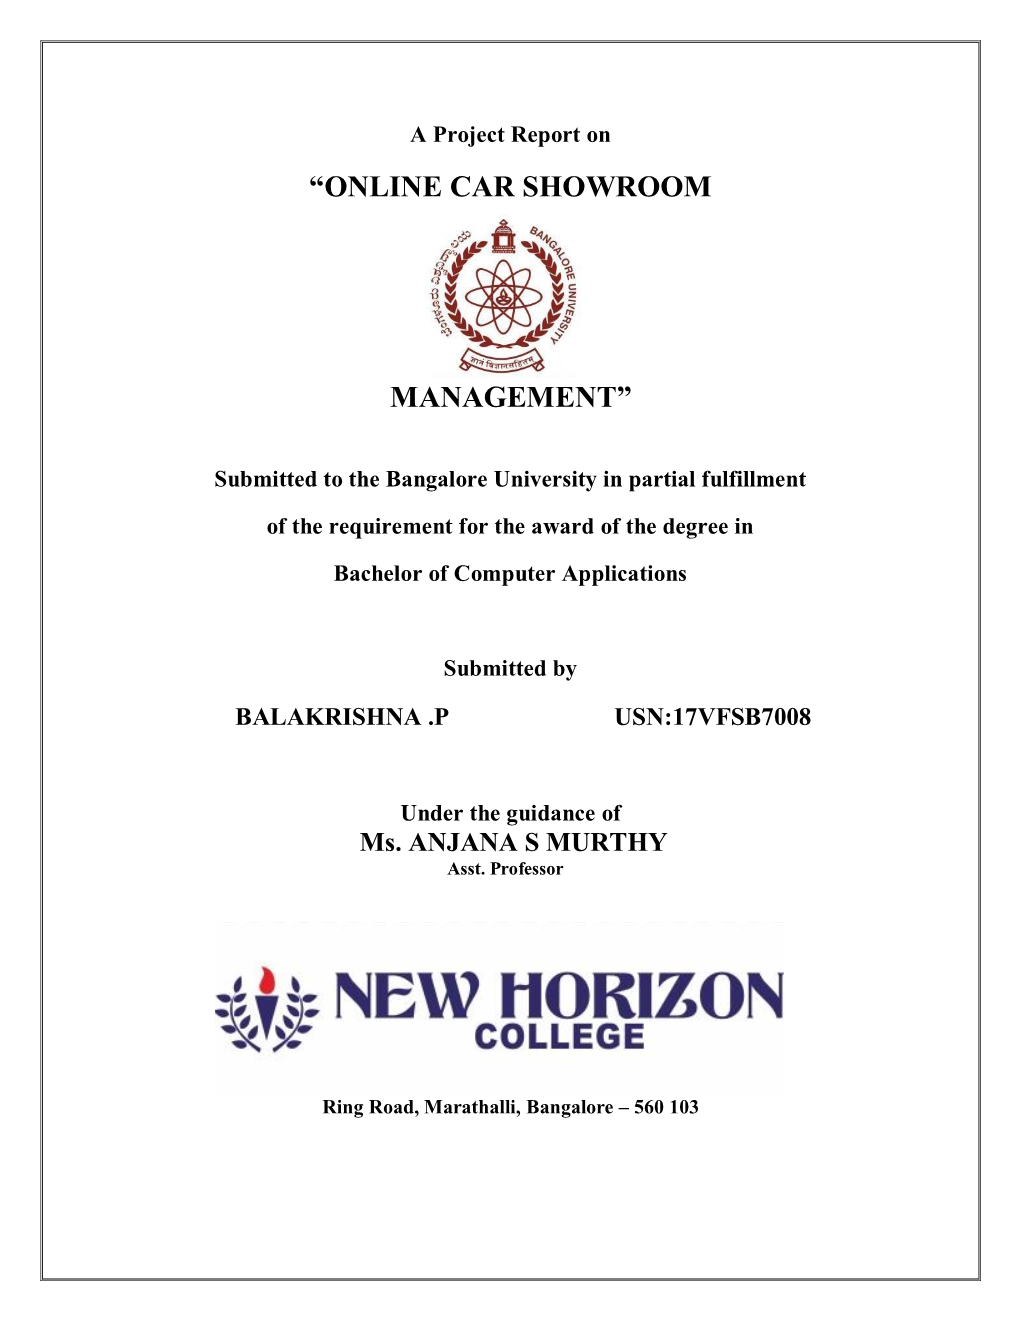 “Online Car Showroom Management”